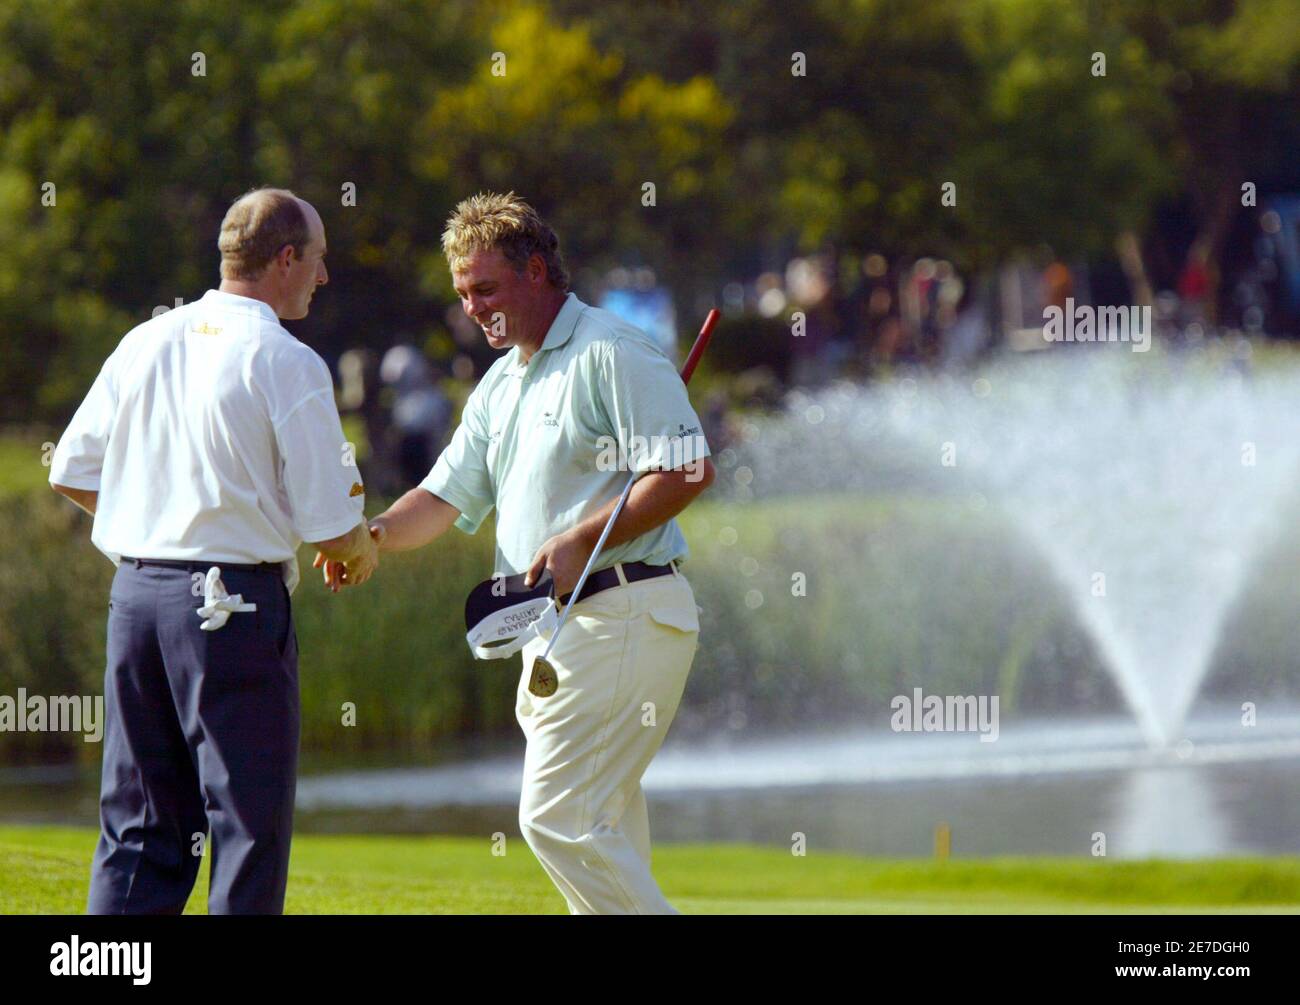 Jim Furyk (L) des États-Unis serre la main avec Darren Clarke (R) de Grande-Bretagne au 18e trou pendant le deuxième tour du défi de golf Sun City de 4 millions de dollars à Sun City, à l'ouest de Johannesburg, en Afrique du Sud le 2 décembre 2005. REUTERS/Juma Ngwenya Banque D'Images